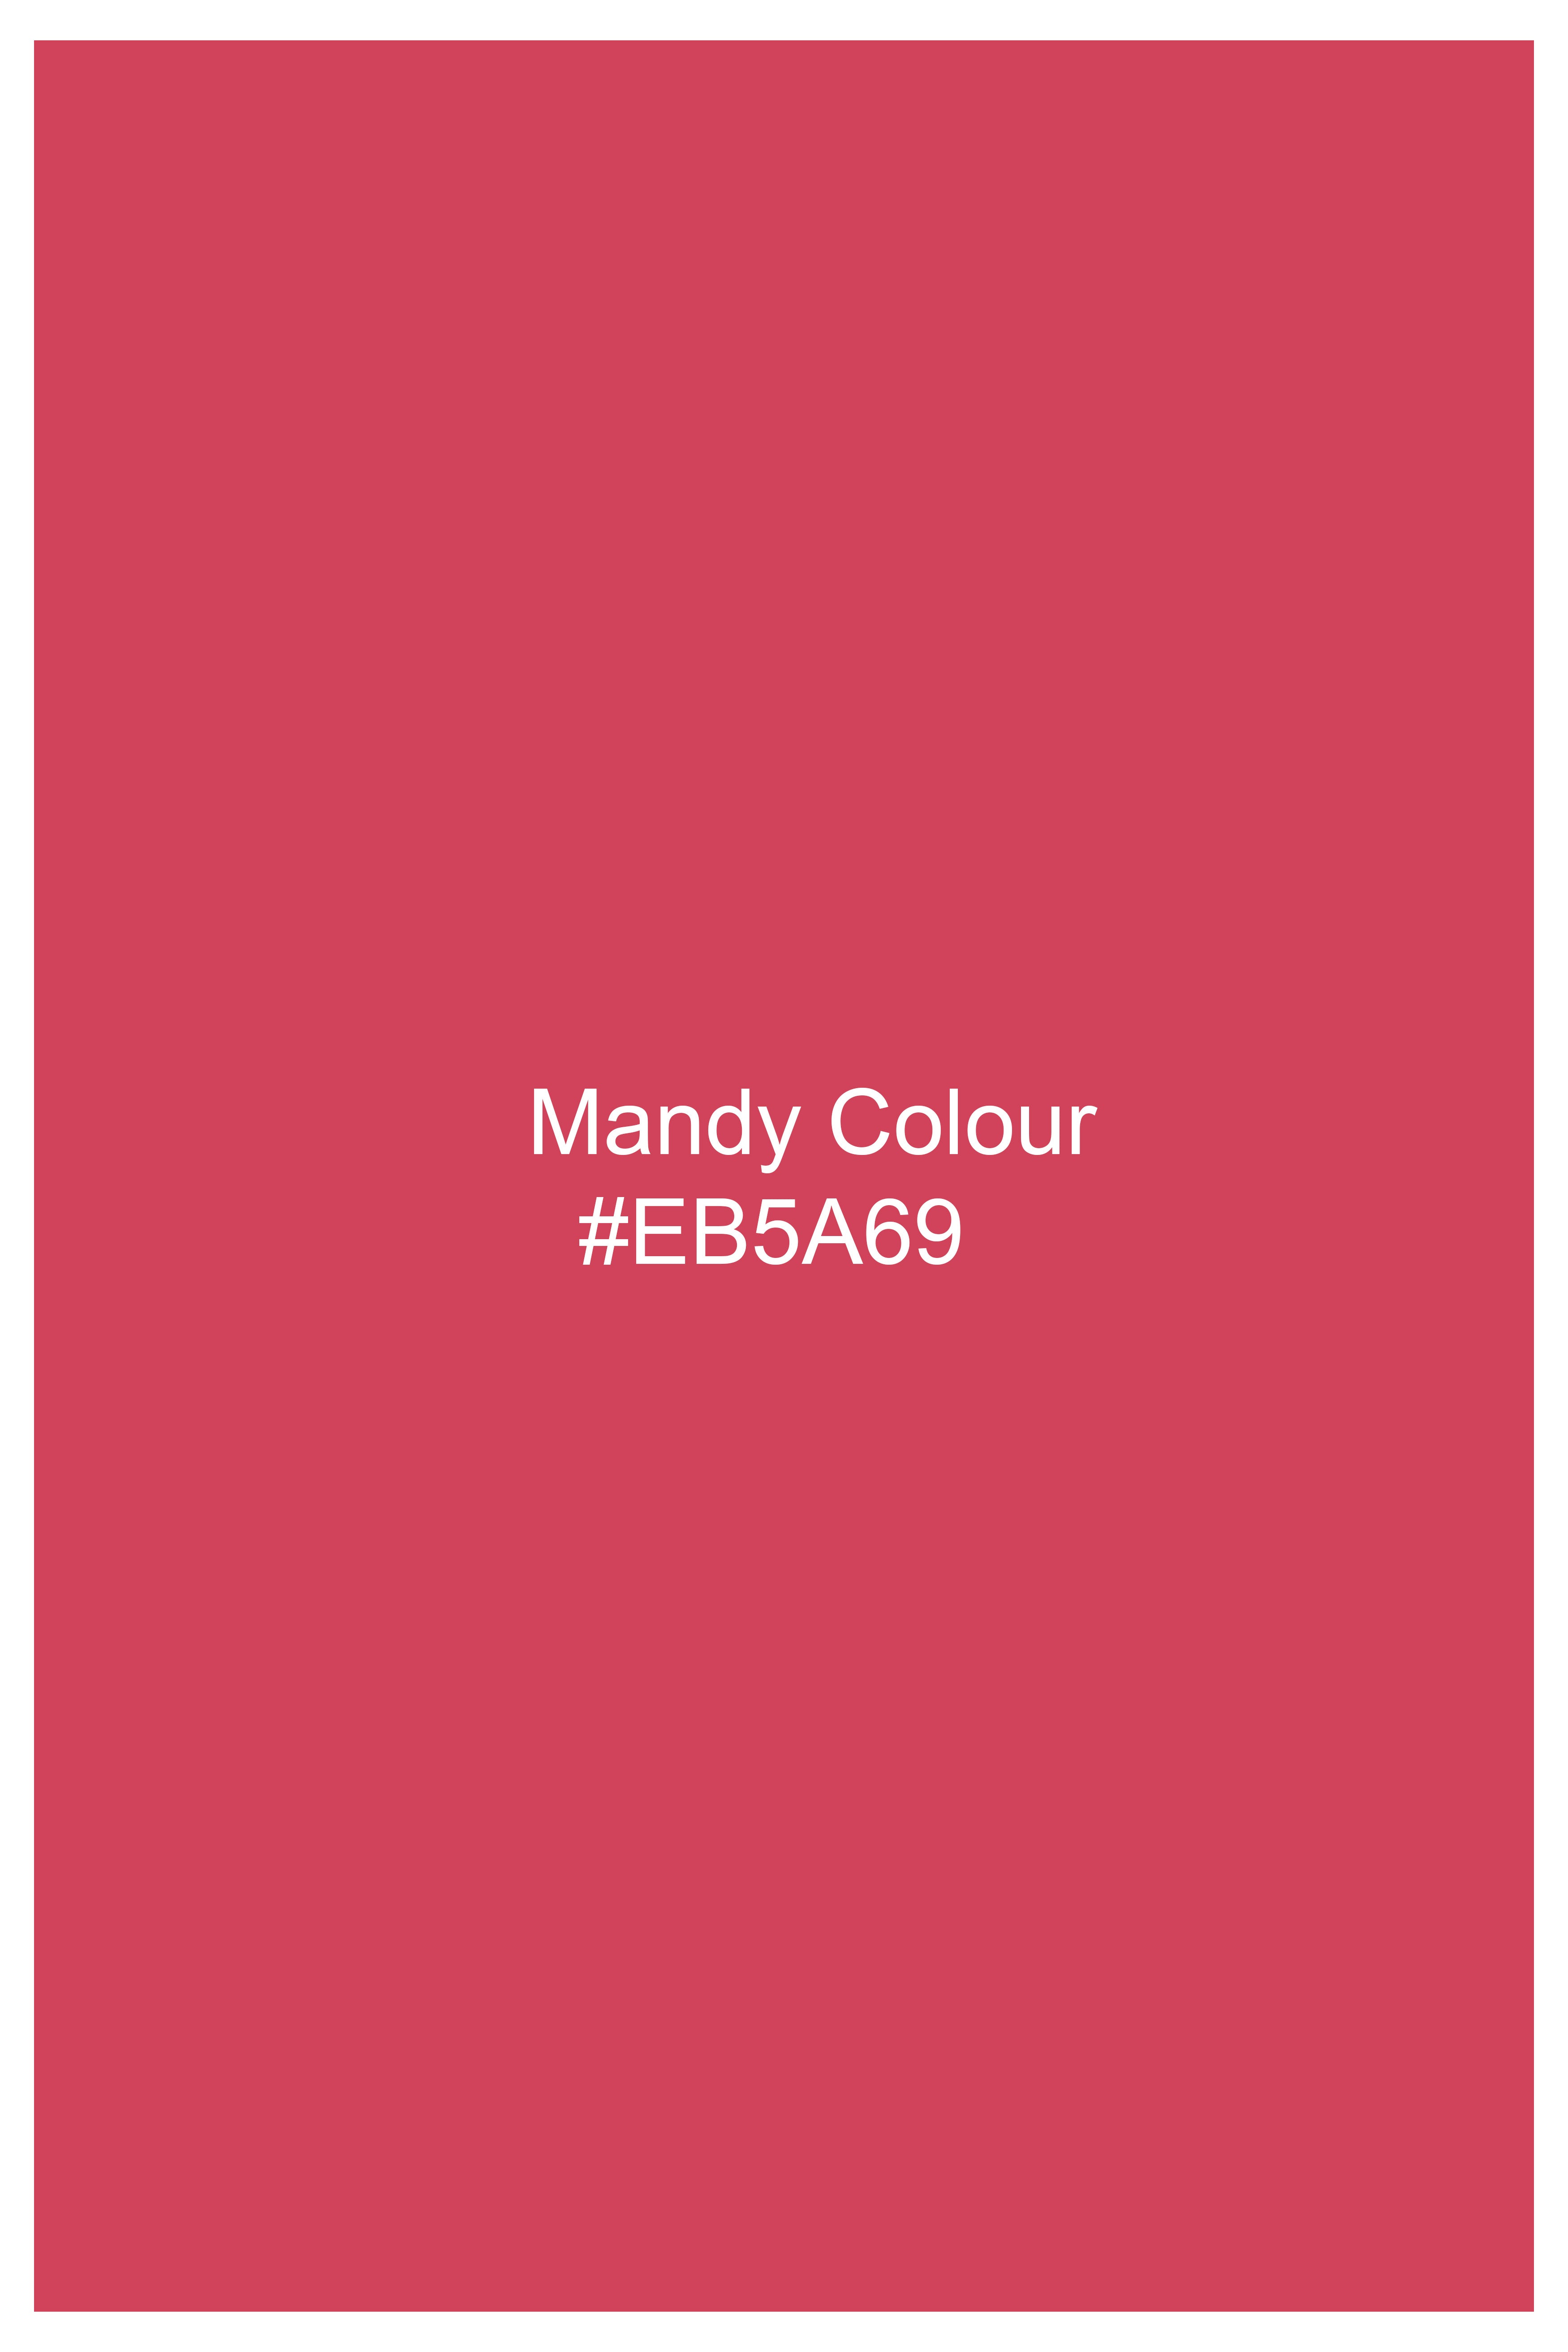 Mandy Pink Hand Painted Luxurious Linen Designer Shirt 6406-M-BLK-ART-38, 6406-M-BLK-ART-H-38, 6406-M-BLK-ART-39, 6406-M-BLK-ART-H-39, 6406-M-BLK-ART-40, 6406-M-BLK-ART-H-40, 6406-M-BLK-ART-42, 6406-M-BLK-ART-H-42, 6406-M-BLK-ART-44, 6406-M-BLK-ART-H-44, 6406-M-BLK-ART-46, 6406-M-BLK-ART-H-46, 6406-M-BLK-ART-48, 6406-M-BLK-ART-H-48, 6406-M-BLK-ART-50, 6406-M-BLK-ART-H-50, 6406-M-BLK-ART-52, 6406-M-BLK-ART-H-52